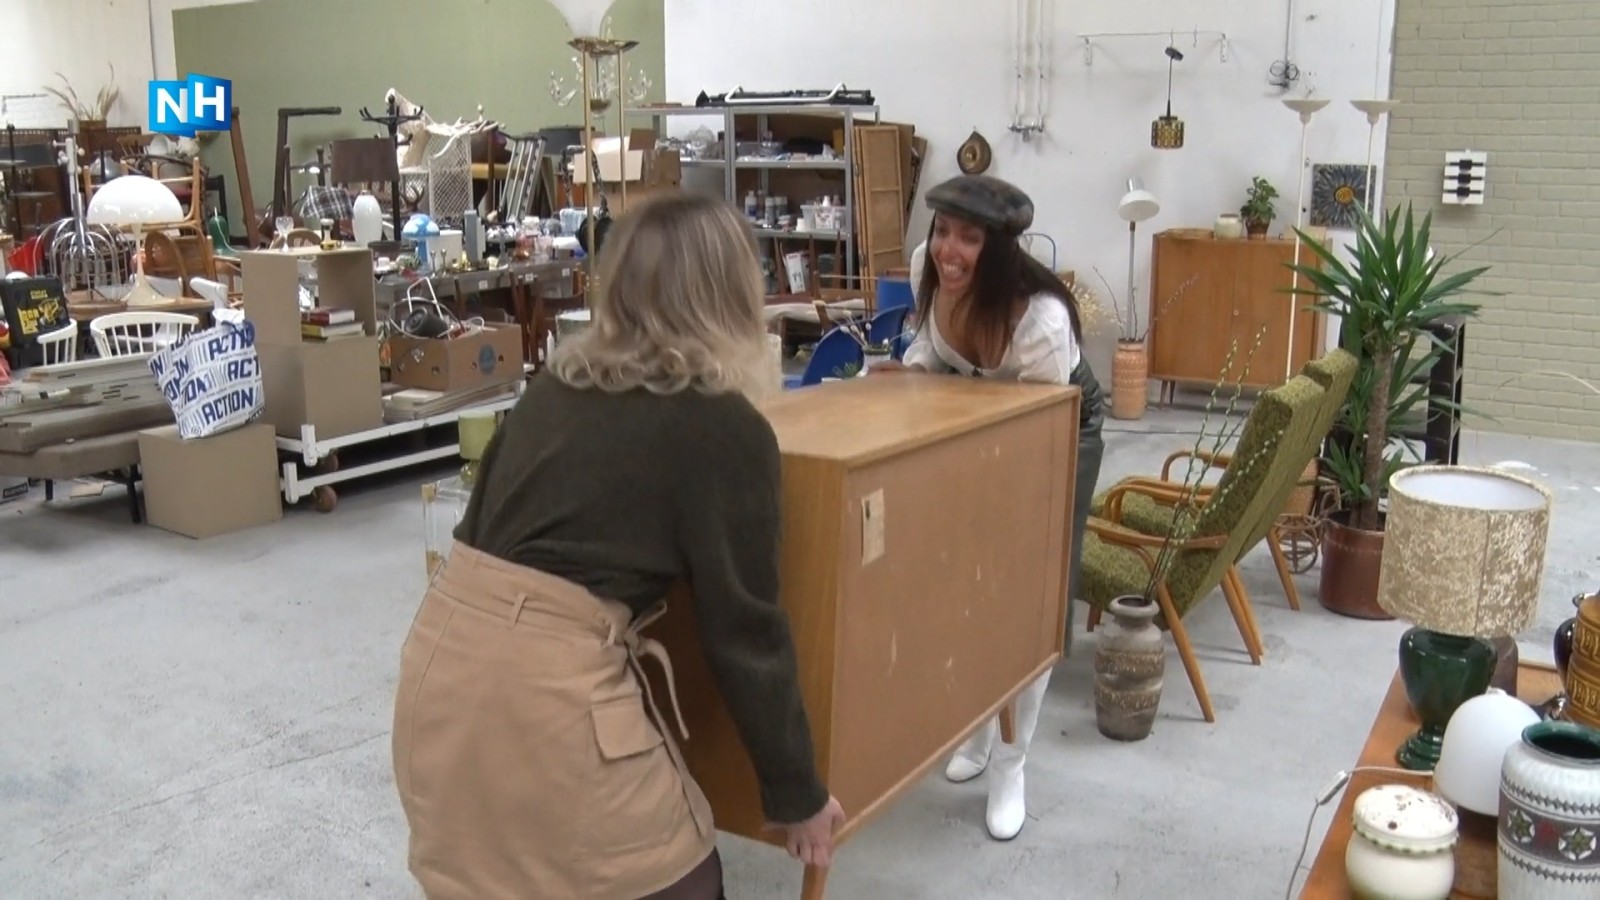 Fabriek toewijzen baas Een site vol hippe tweedehands meubels en meer - NH Nieuws